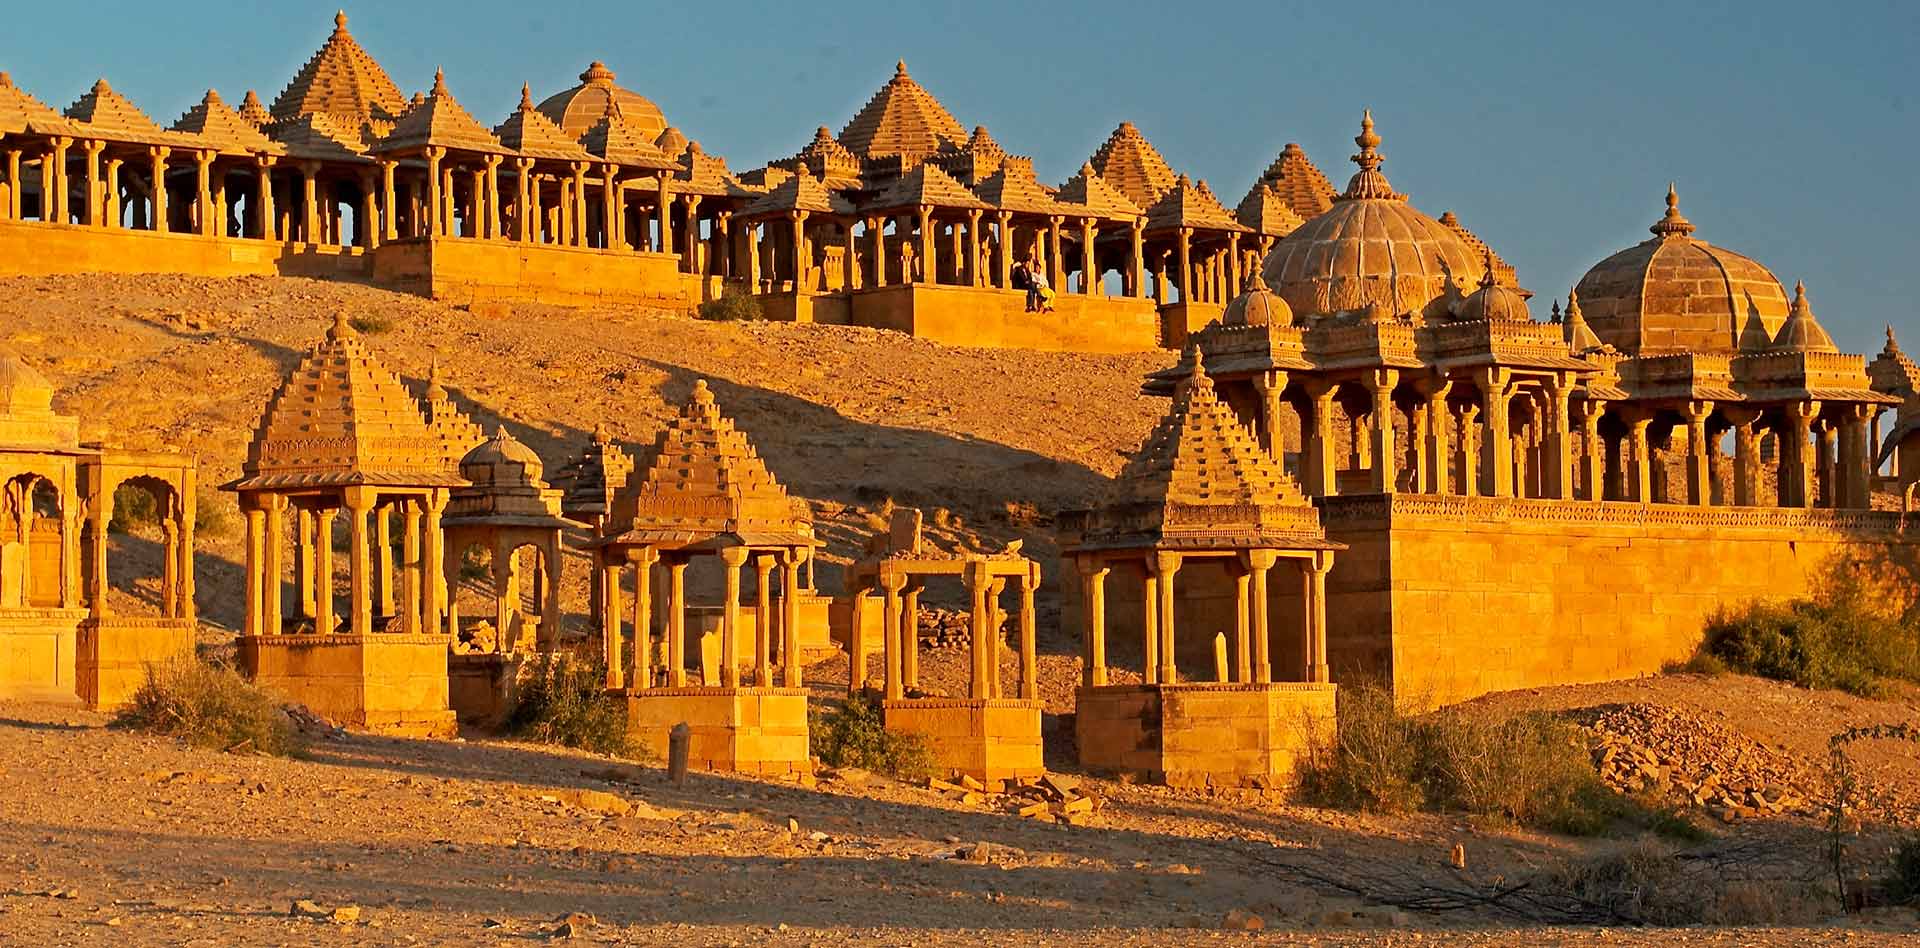 Day 05 : Jodhpur - Jaisalmer